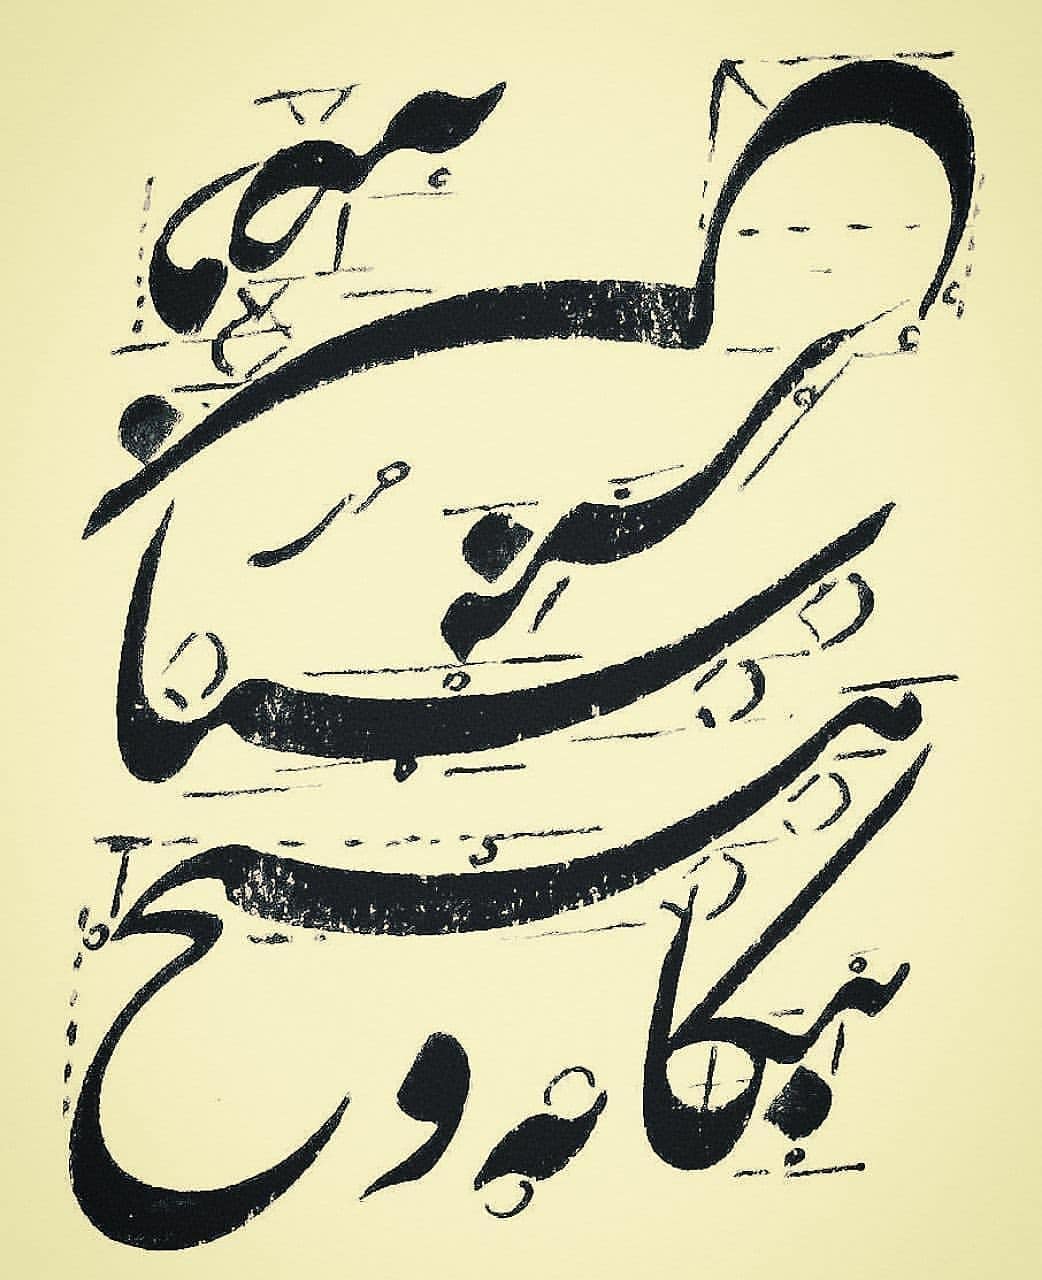 Download Photo Kaligrafi اثر استاد مجید حری
.
.
.
.
.
.
.
#زیبا 
#قرآن 
#اسلام 
#هنر #هنرمند
#ثلث #الثلث …- Vahedi Masoud